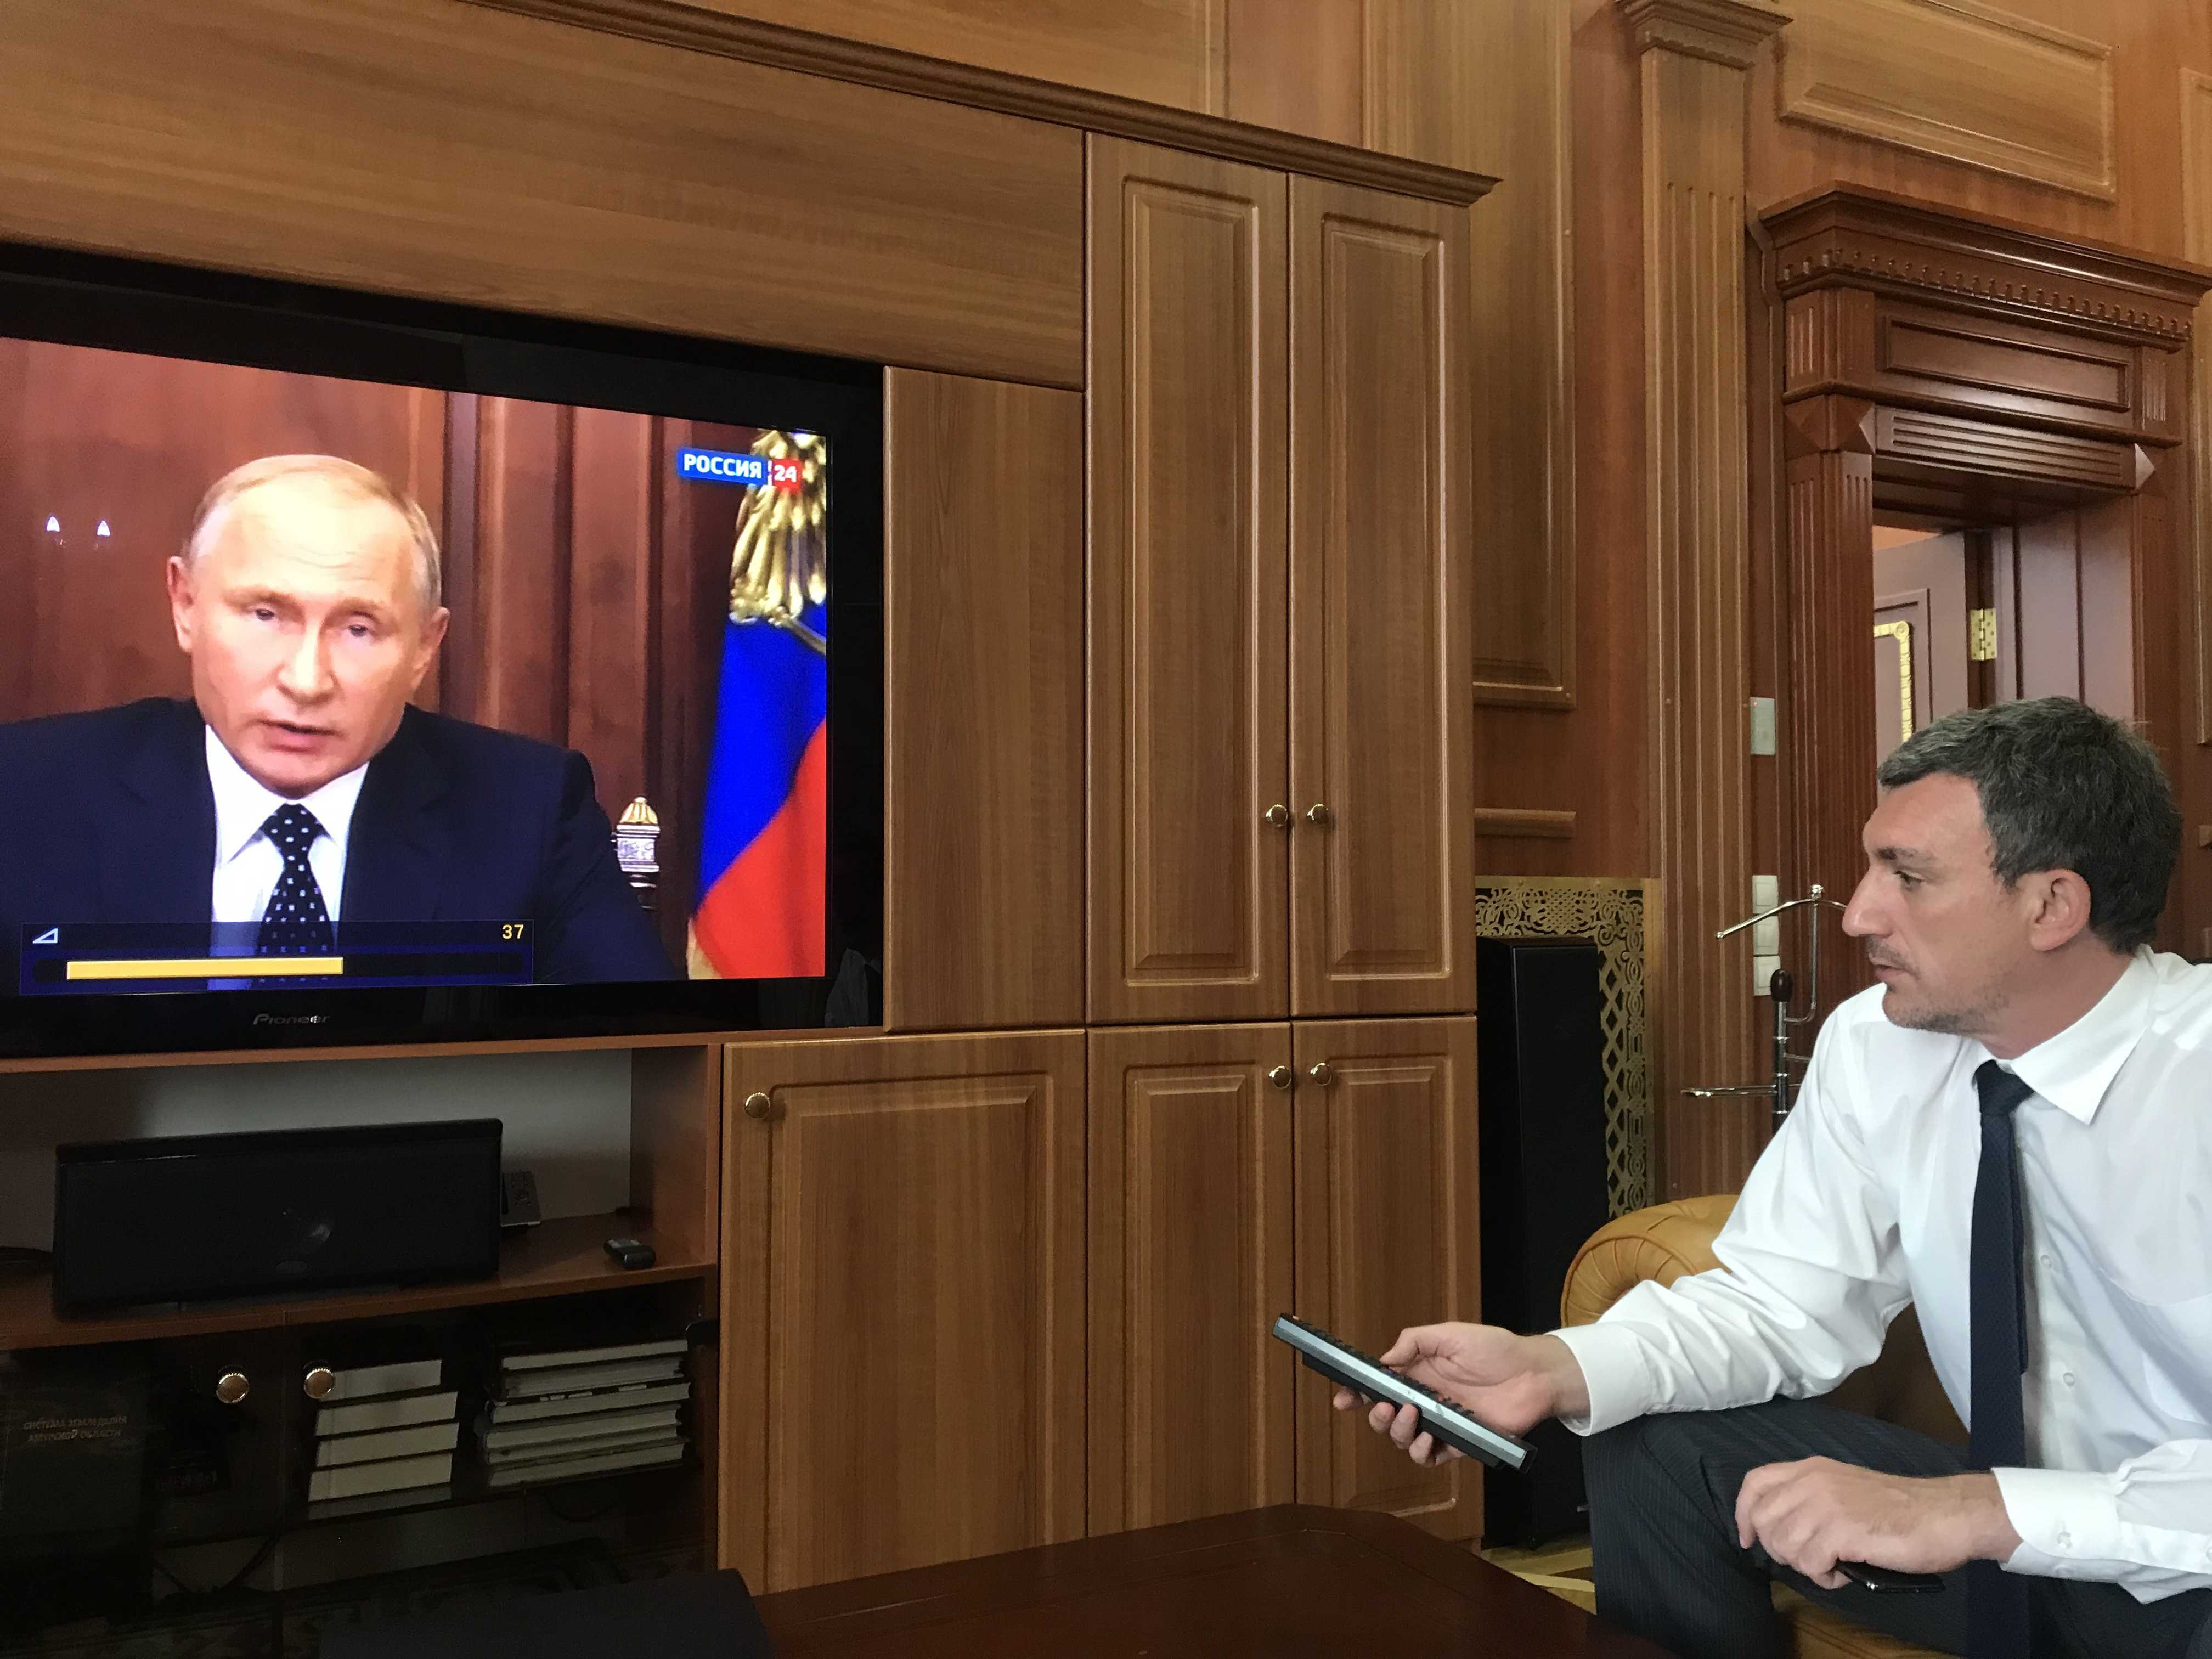 Через п'ять хвилин проблема вирішена, слухаємо Путіна